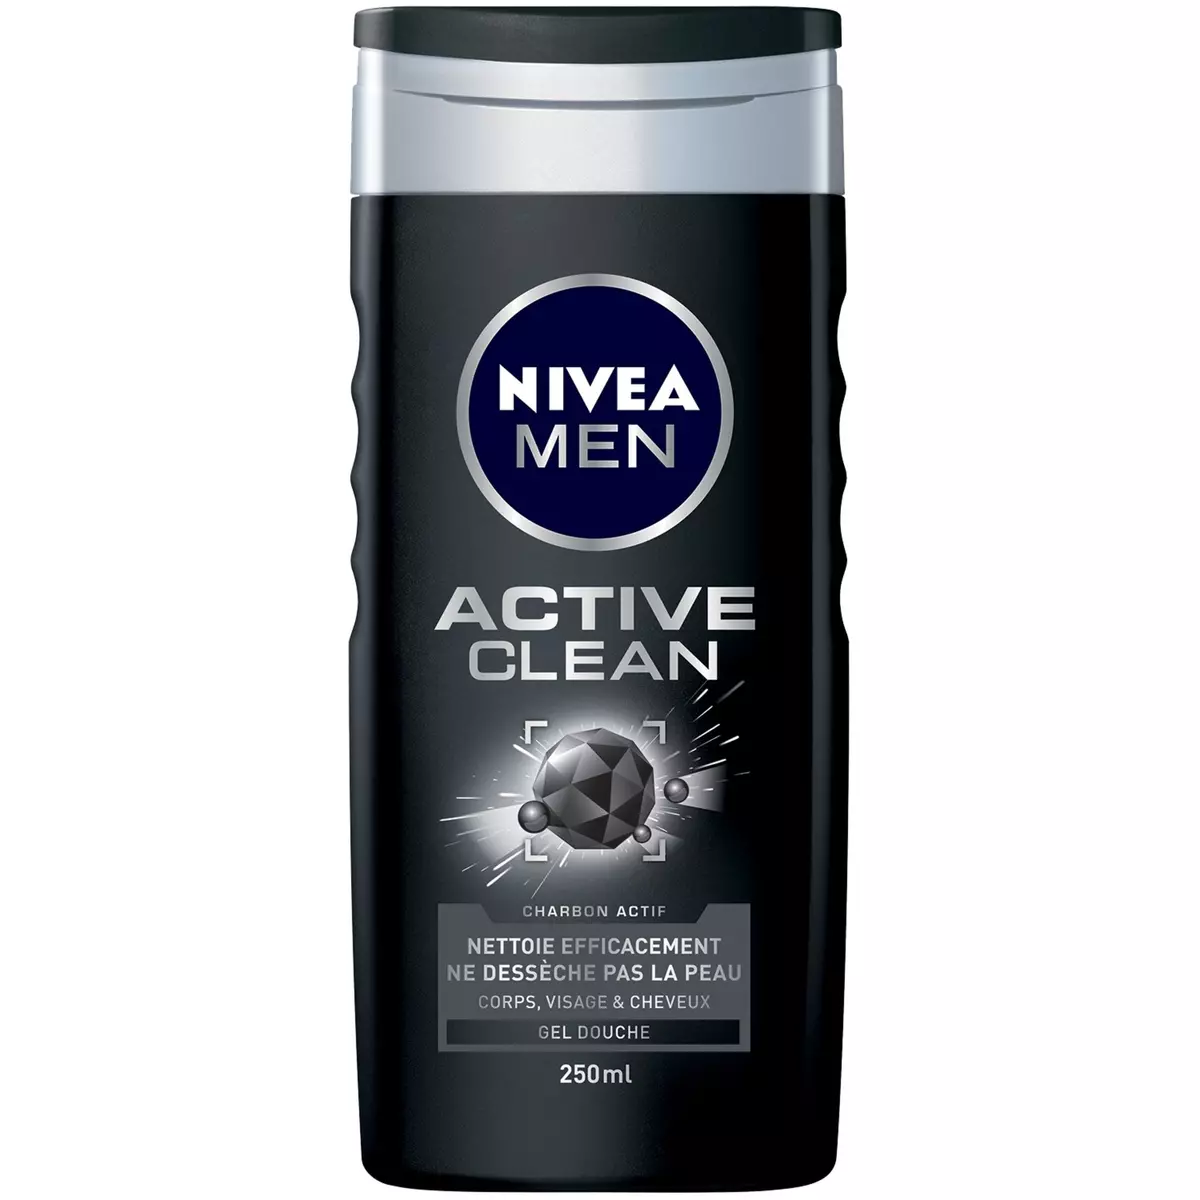 NIVEA MEN Active clean gel douche corps visage et cheveux au charbon actif 250ml